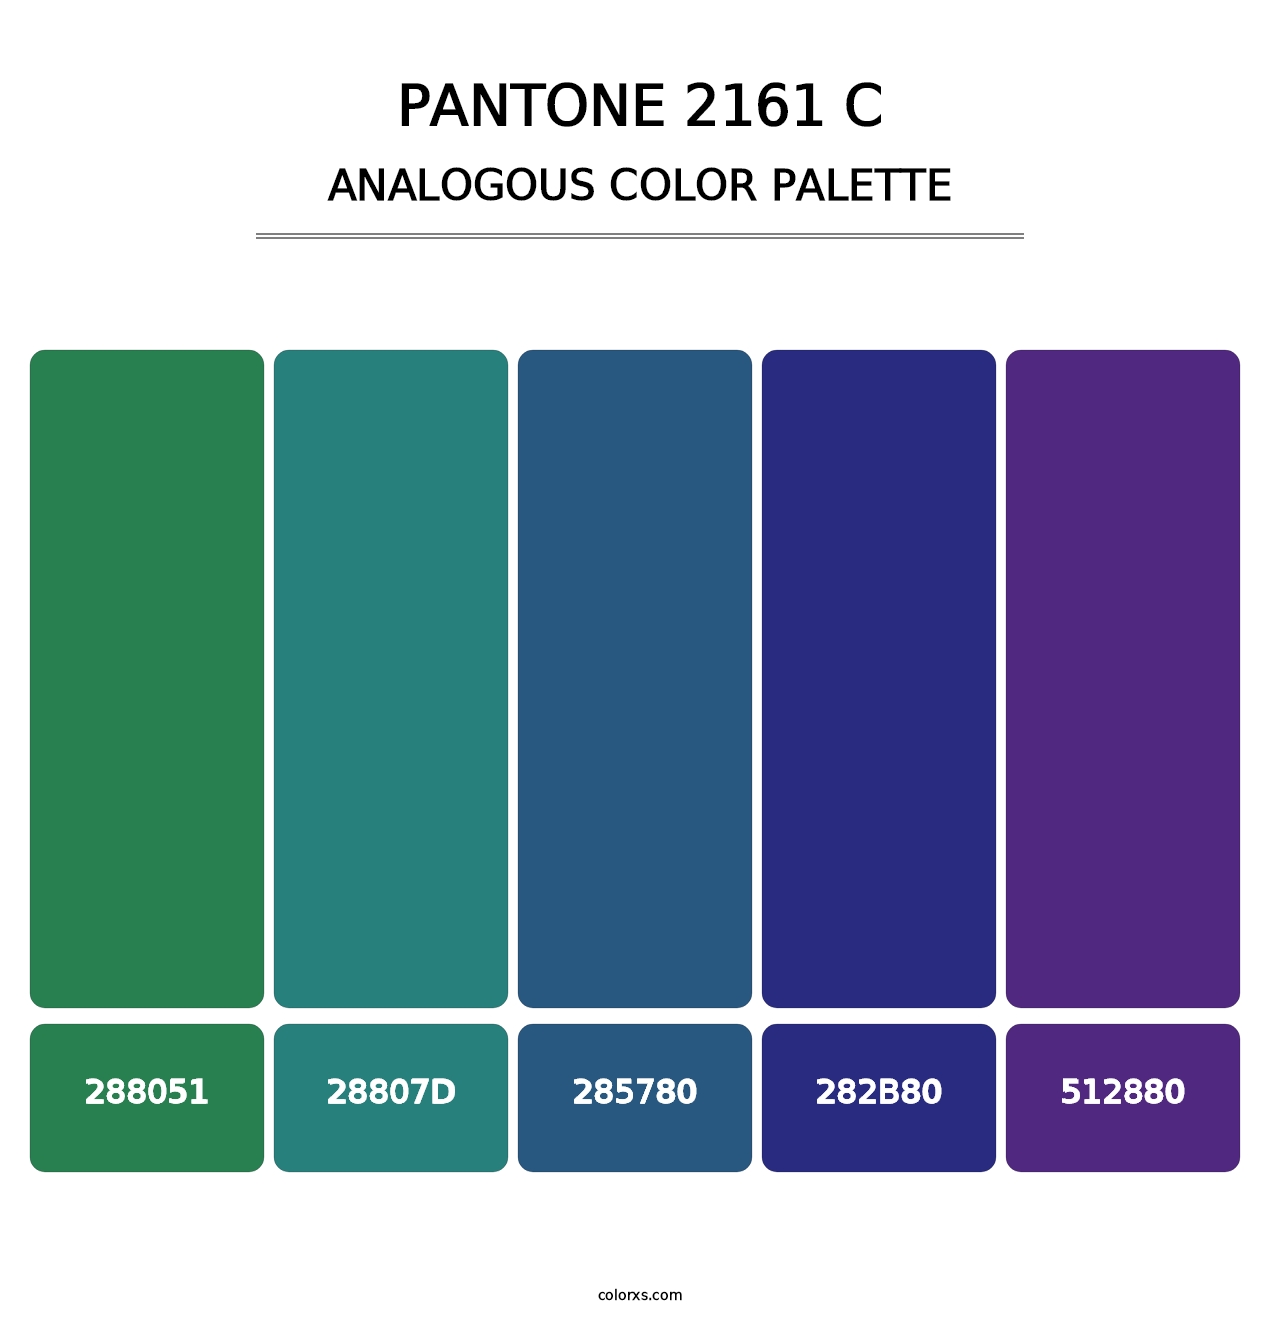 PANTONE 2161 C - Analogous Color Palette